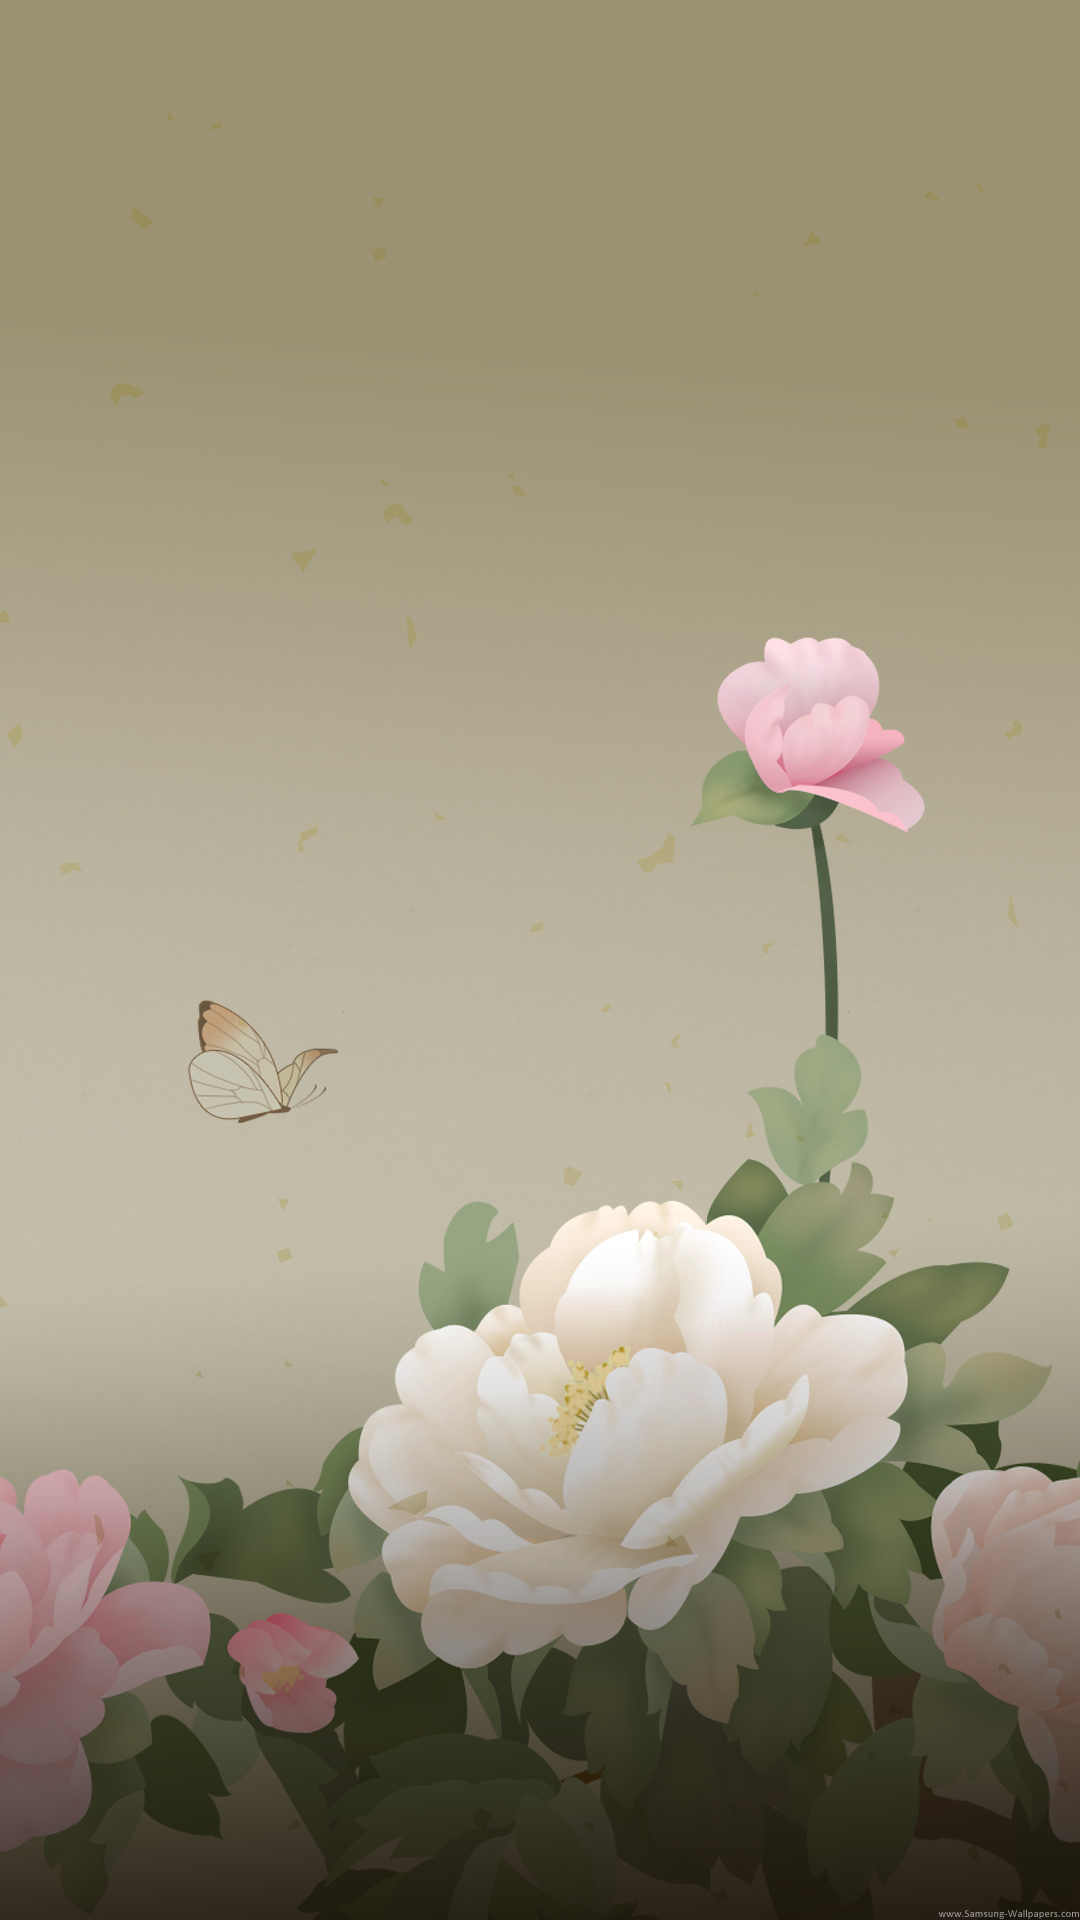 選択した画像 かっこいい 薔薇 蝶 イラスト イケメン 戦国 イラスト